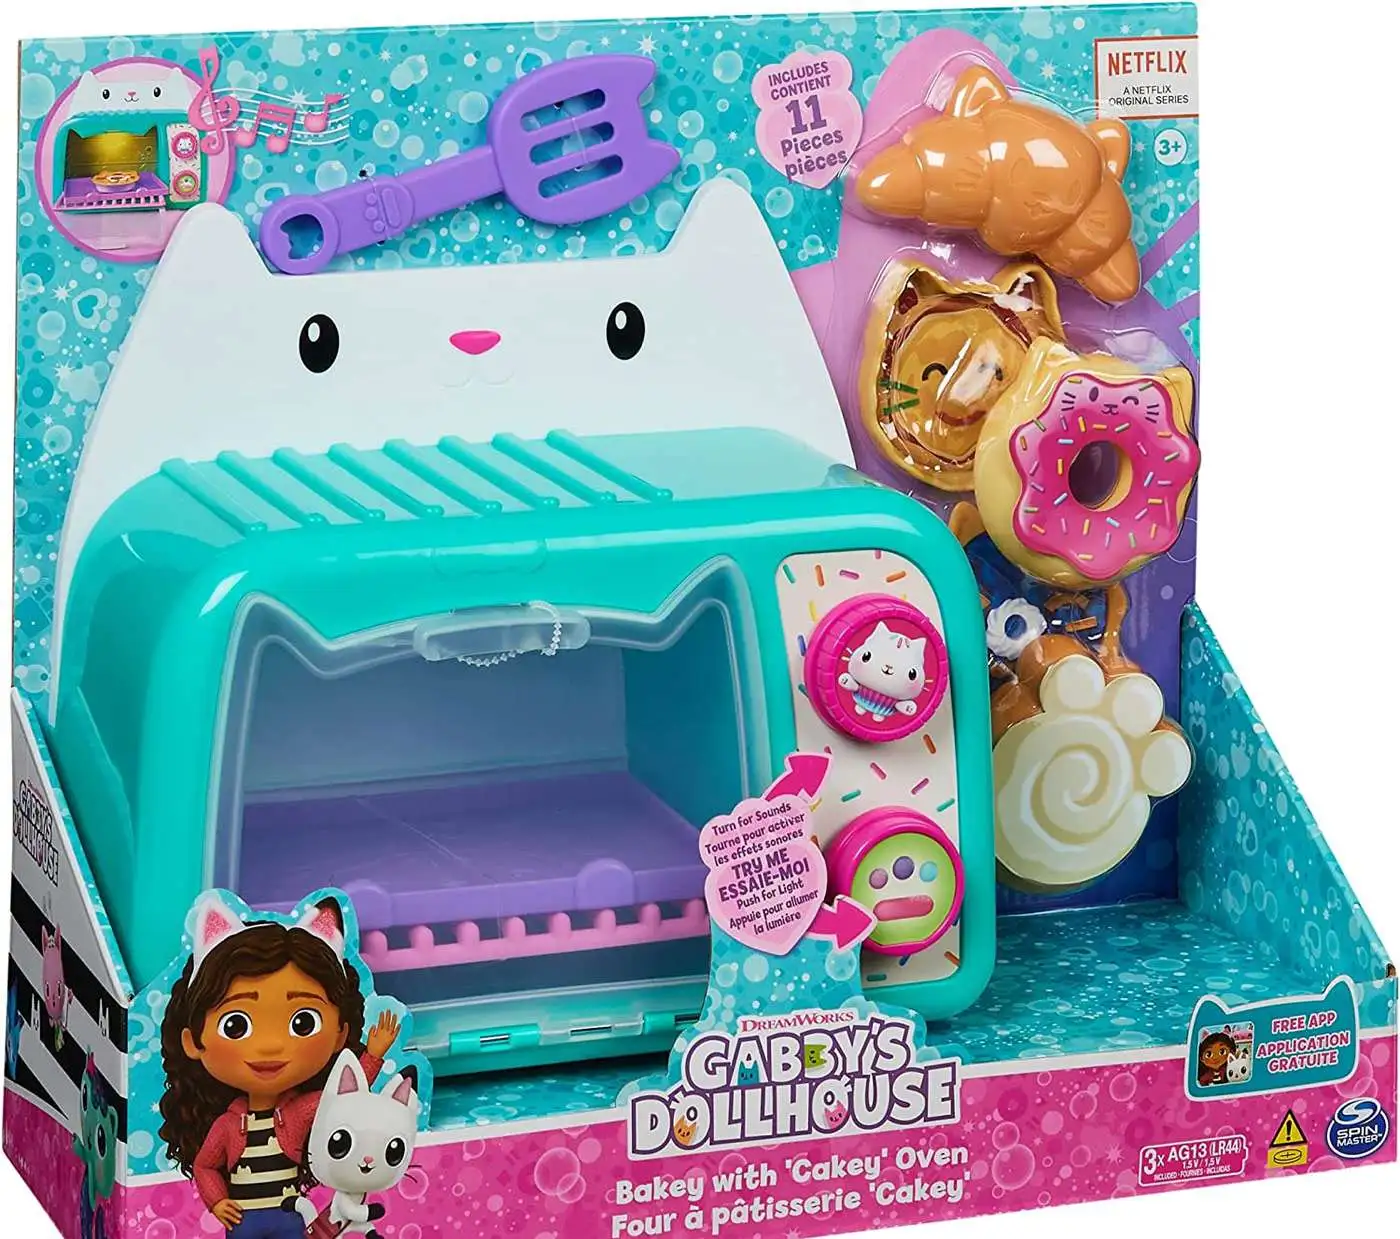 Gabby's Dollhouse Mini Dollhouse Playset